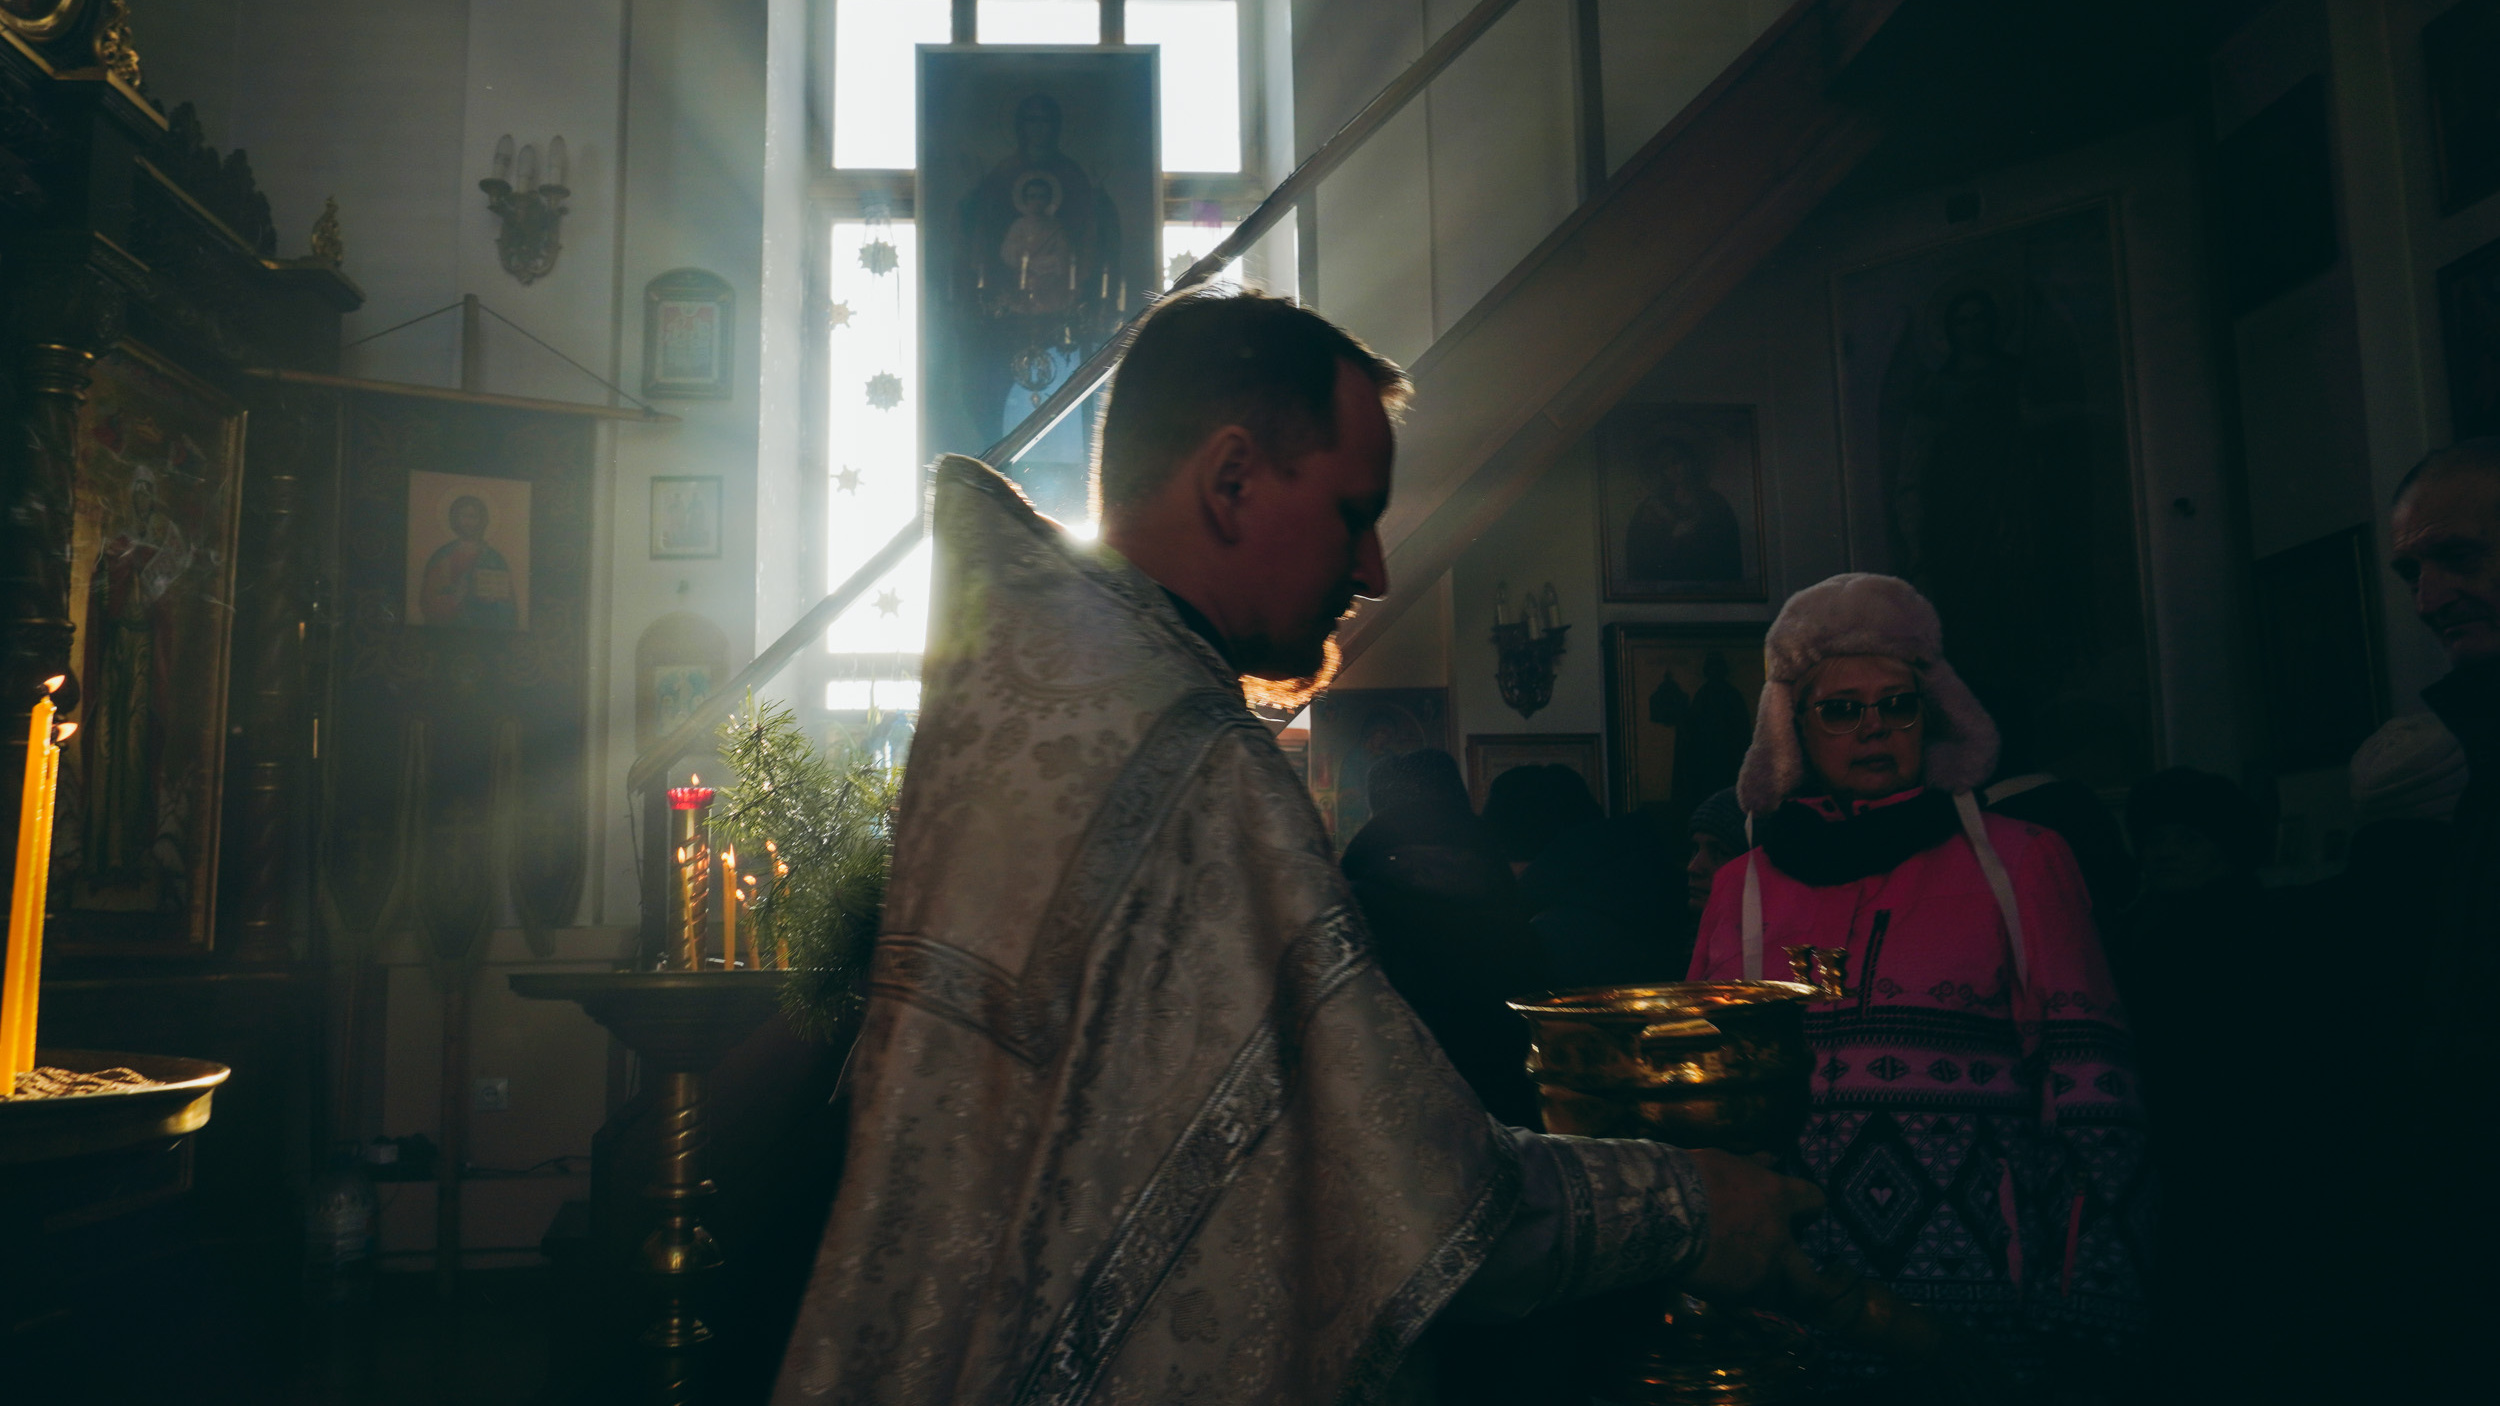 Хотел быть военным, а стал священником: как я провела праздник Крещения вместе с отцом Артемием в Чернолучье